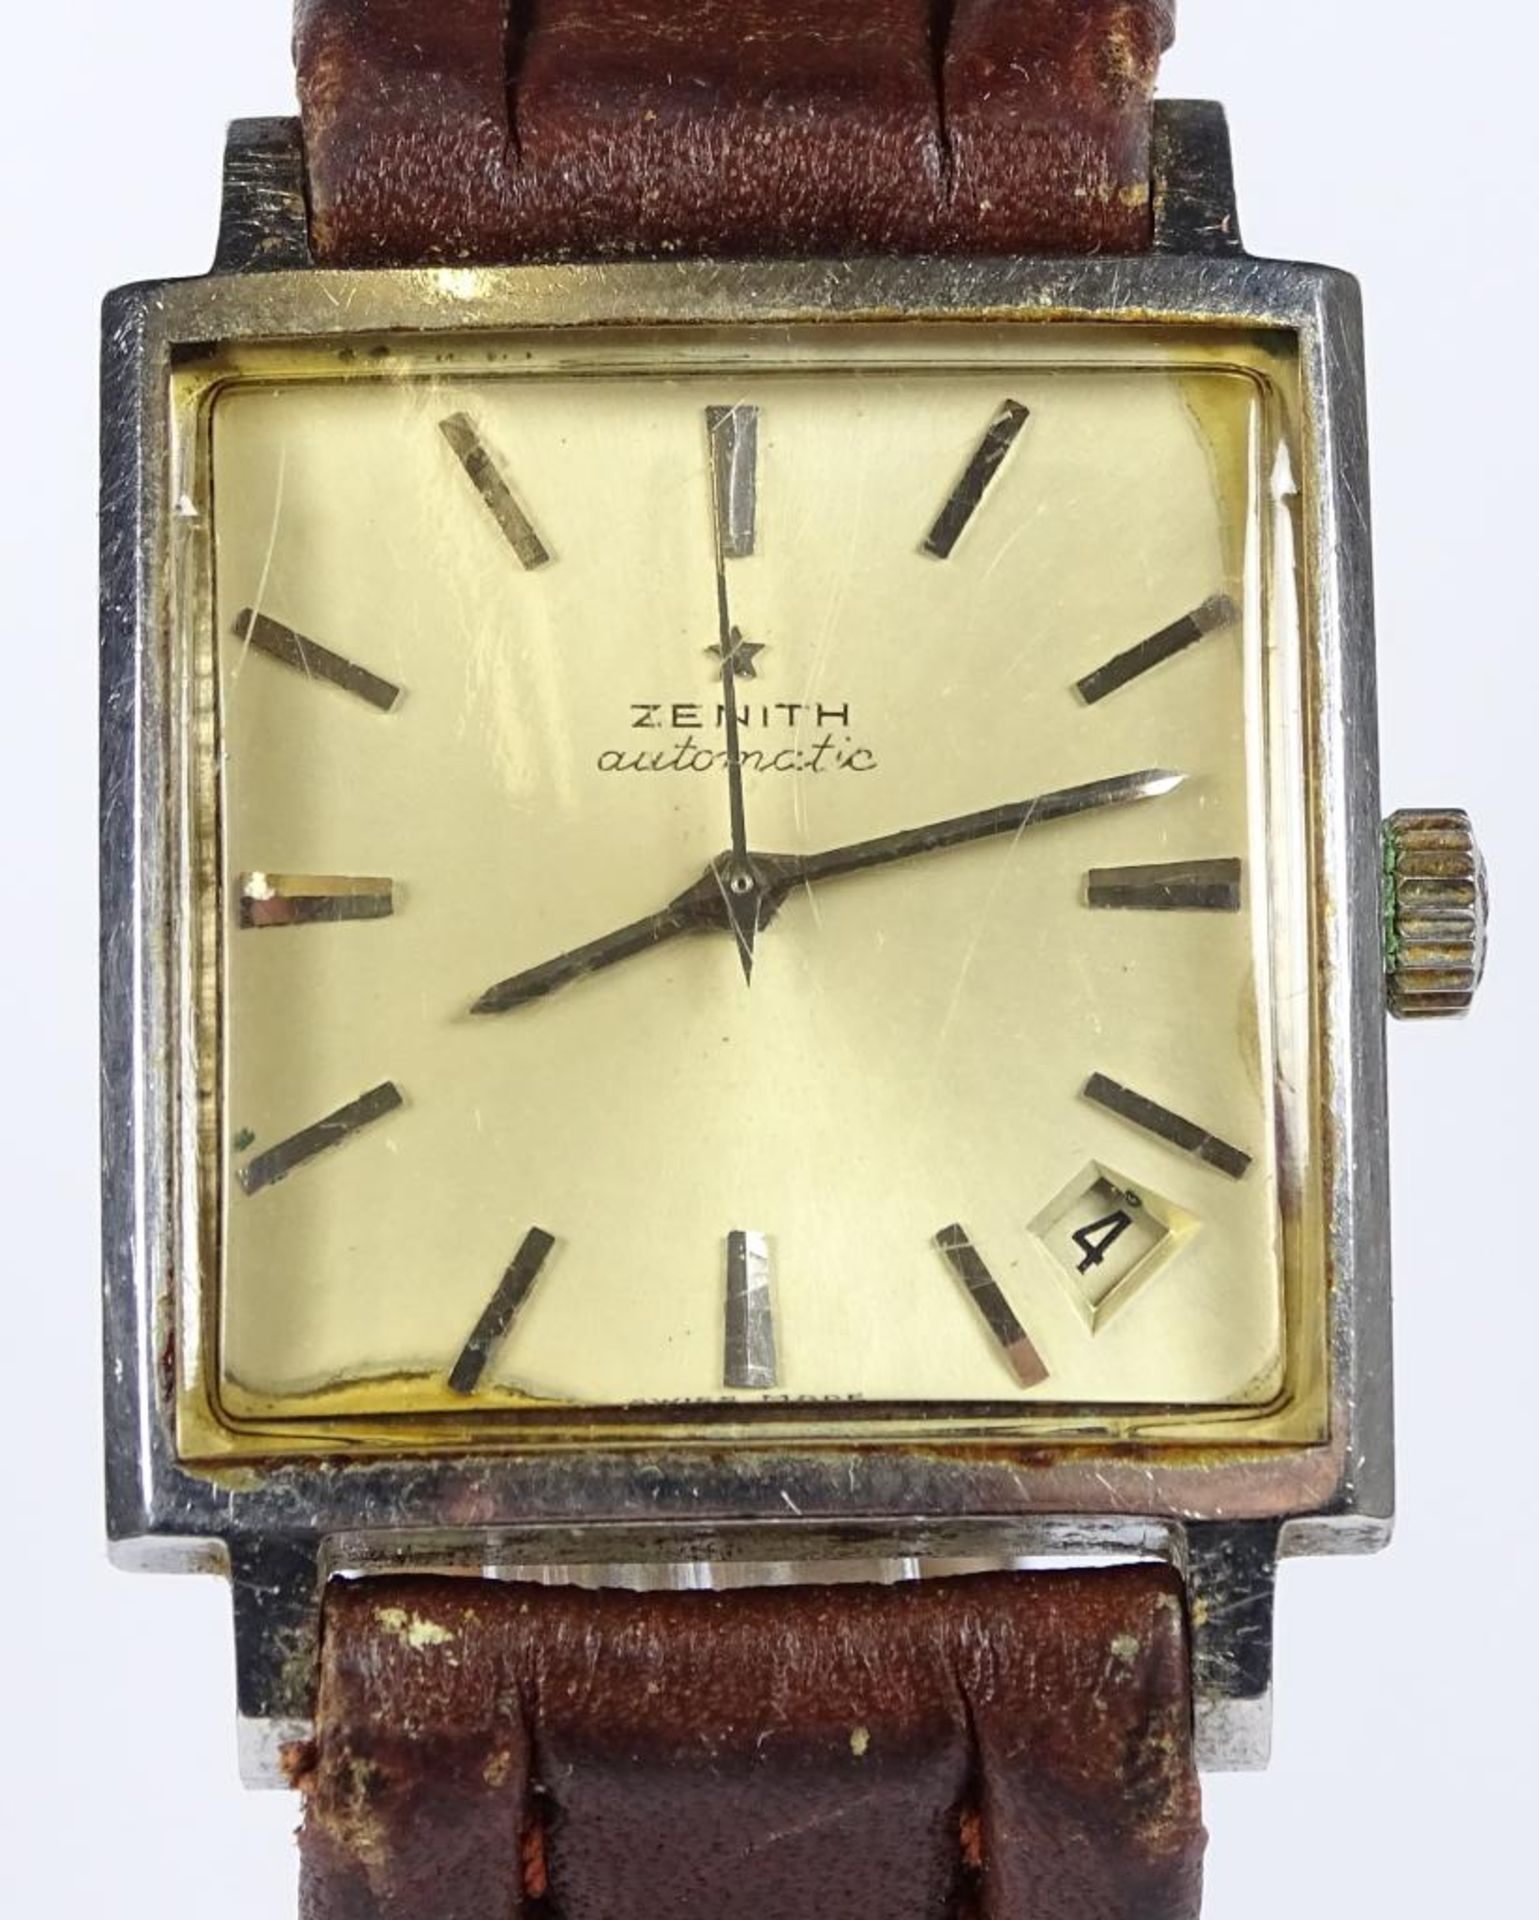 Herren Armbanduhr "Zenith",1960er Jahre,automatik Werk,dieses läuft,Datumsanzeige zwischen 4/5 Uhr, - Bild 2 aus 6